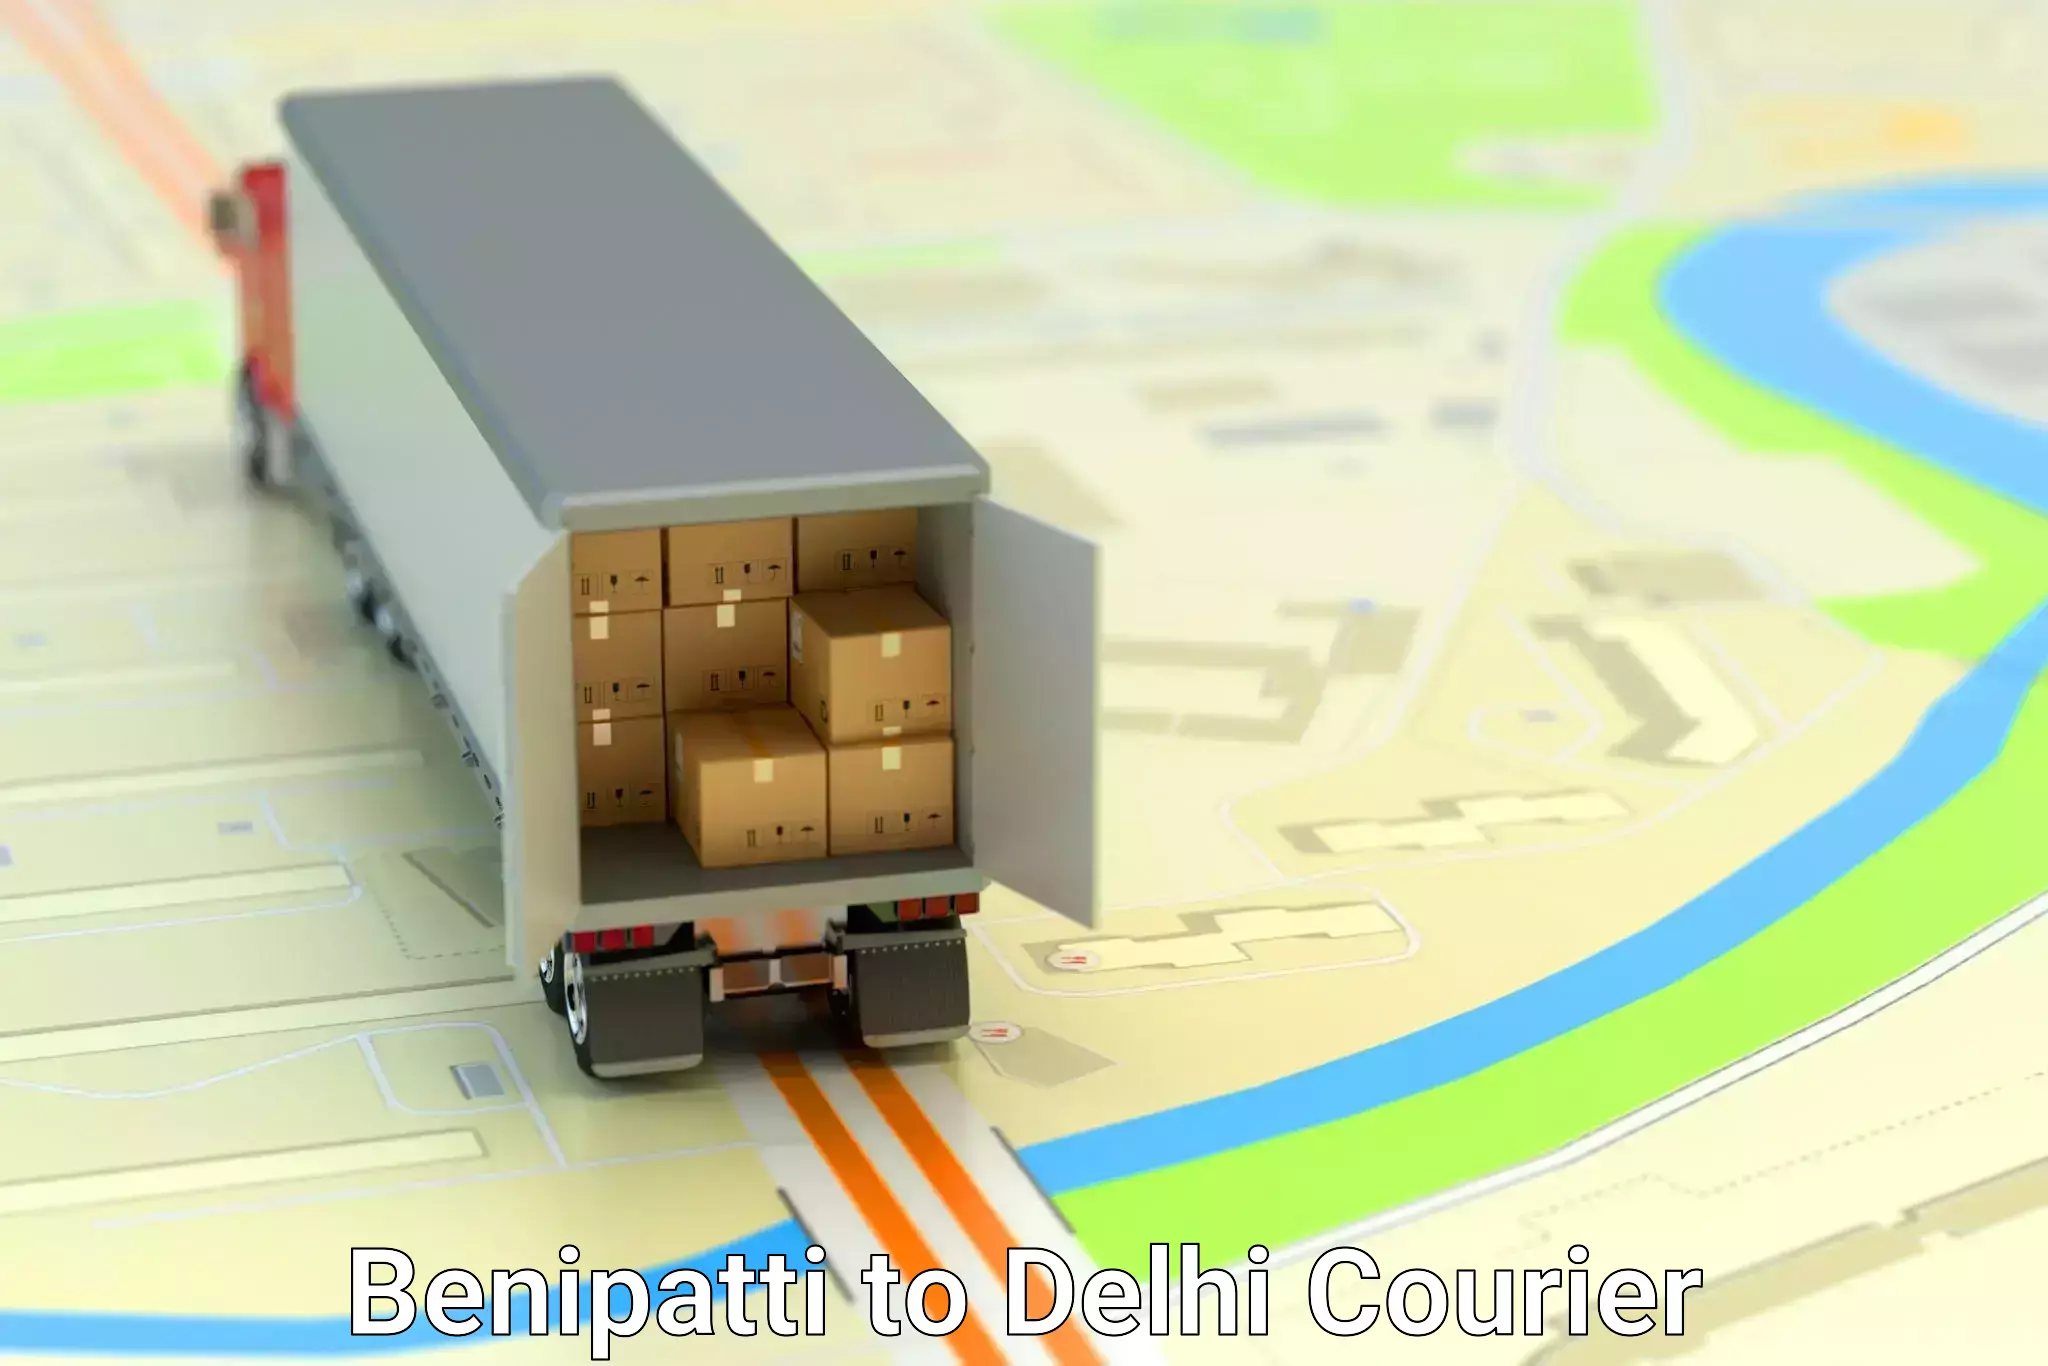 Comprehensive relocation services Benipatti to NIT Delhi